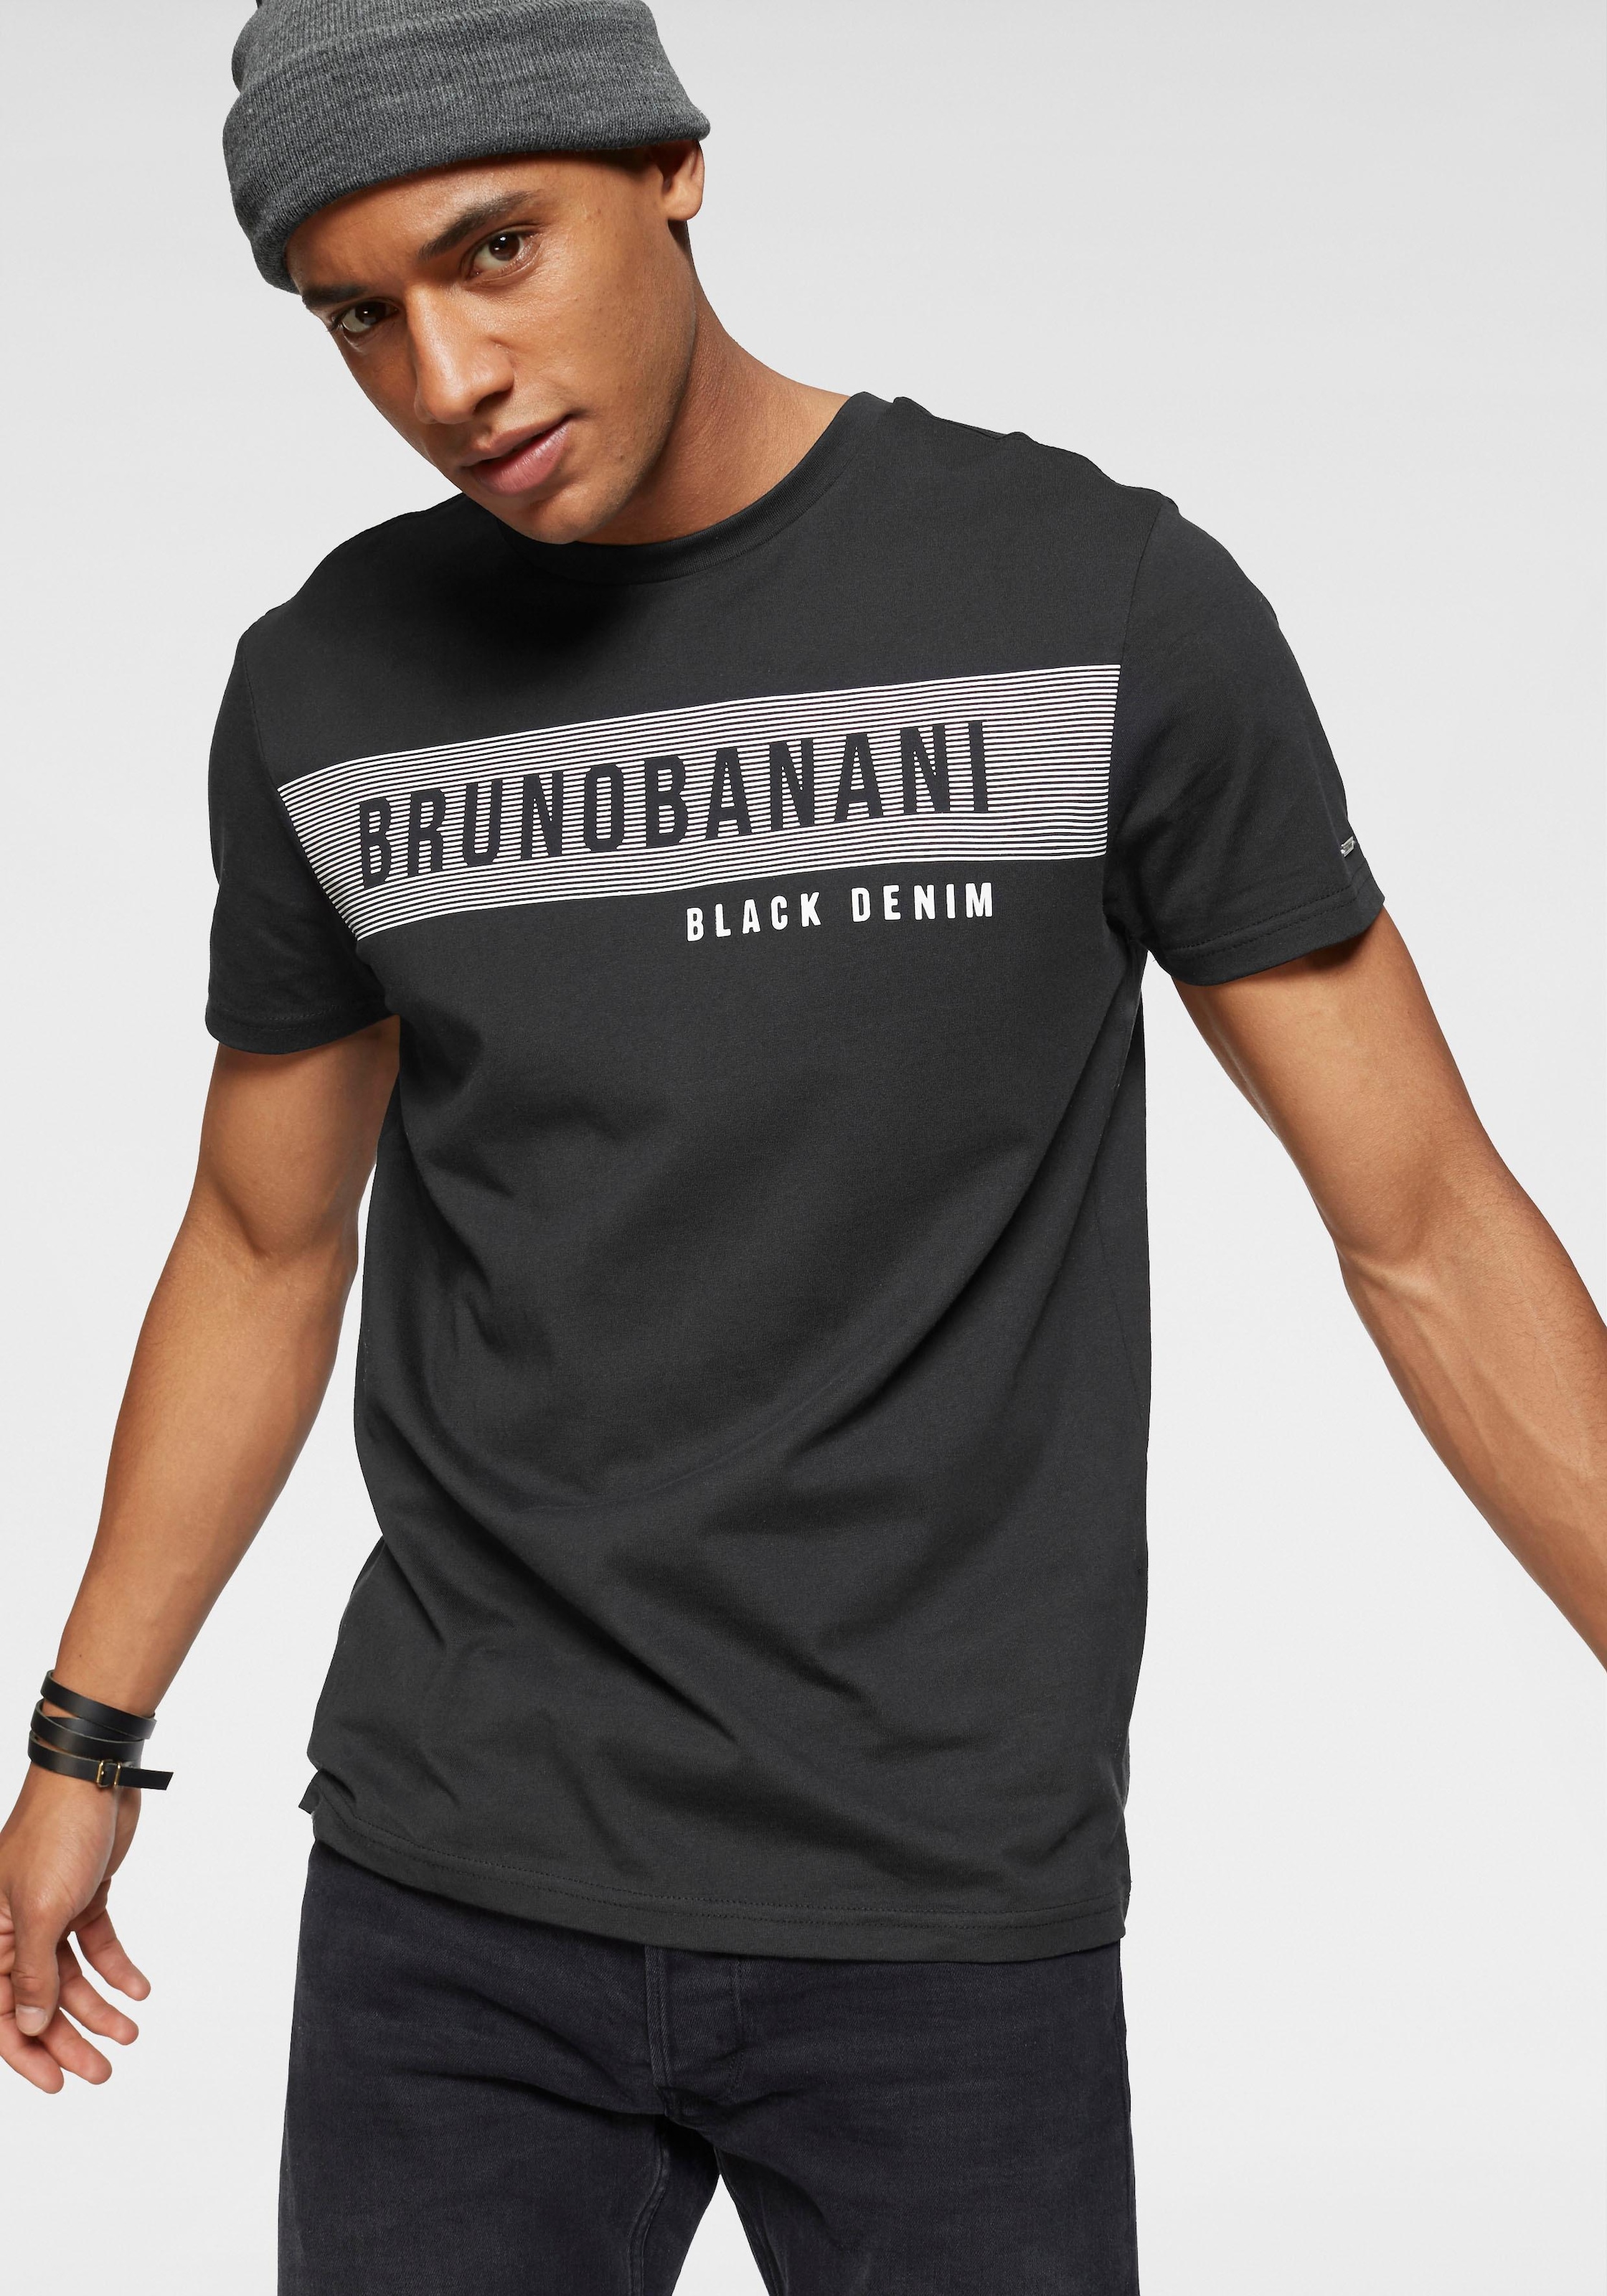 Banani mit Markenprint bei Bruno online OTTO shoppen T-Shirt,